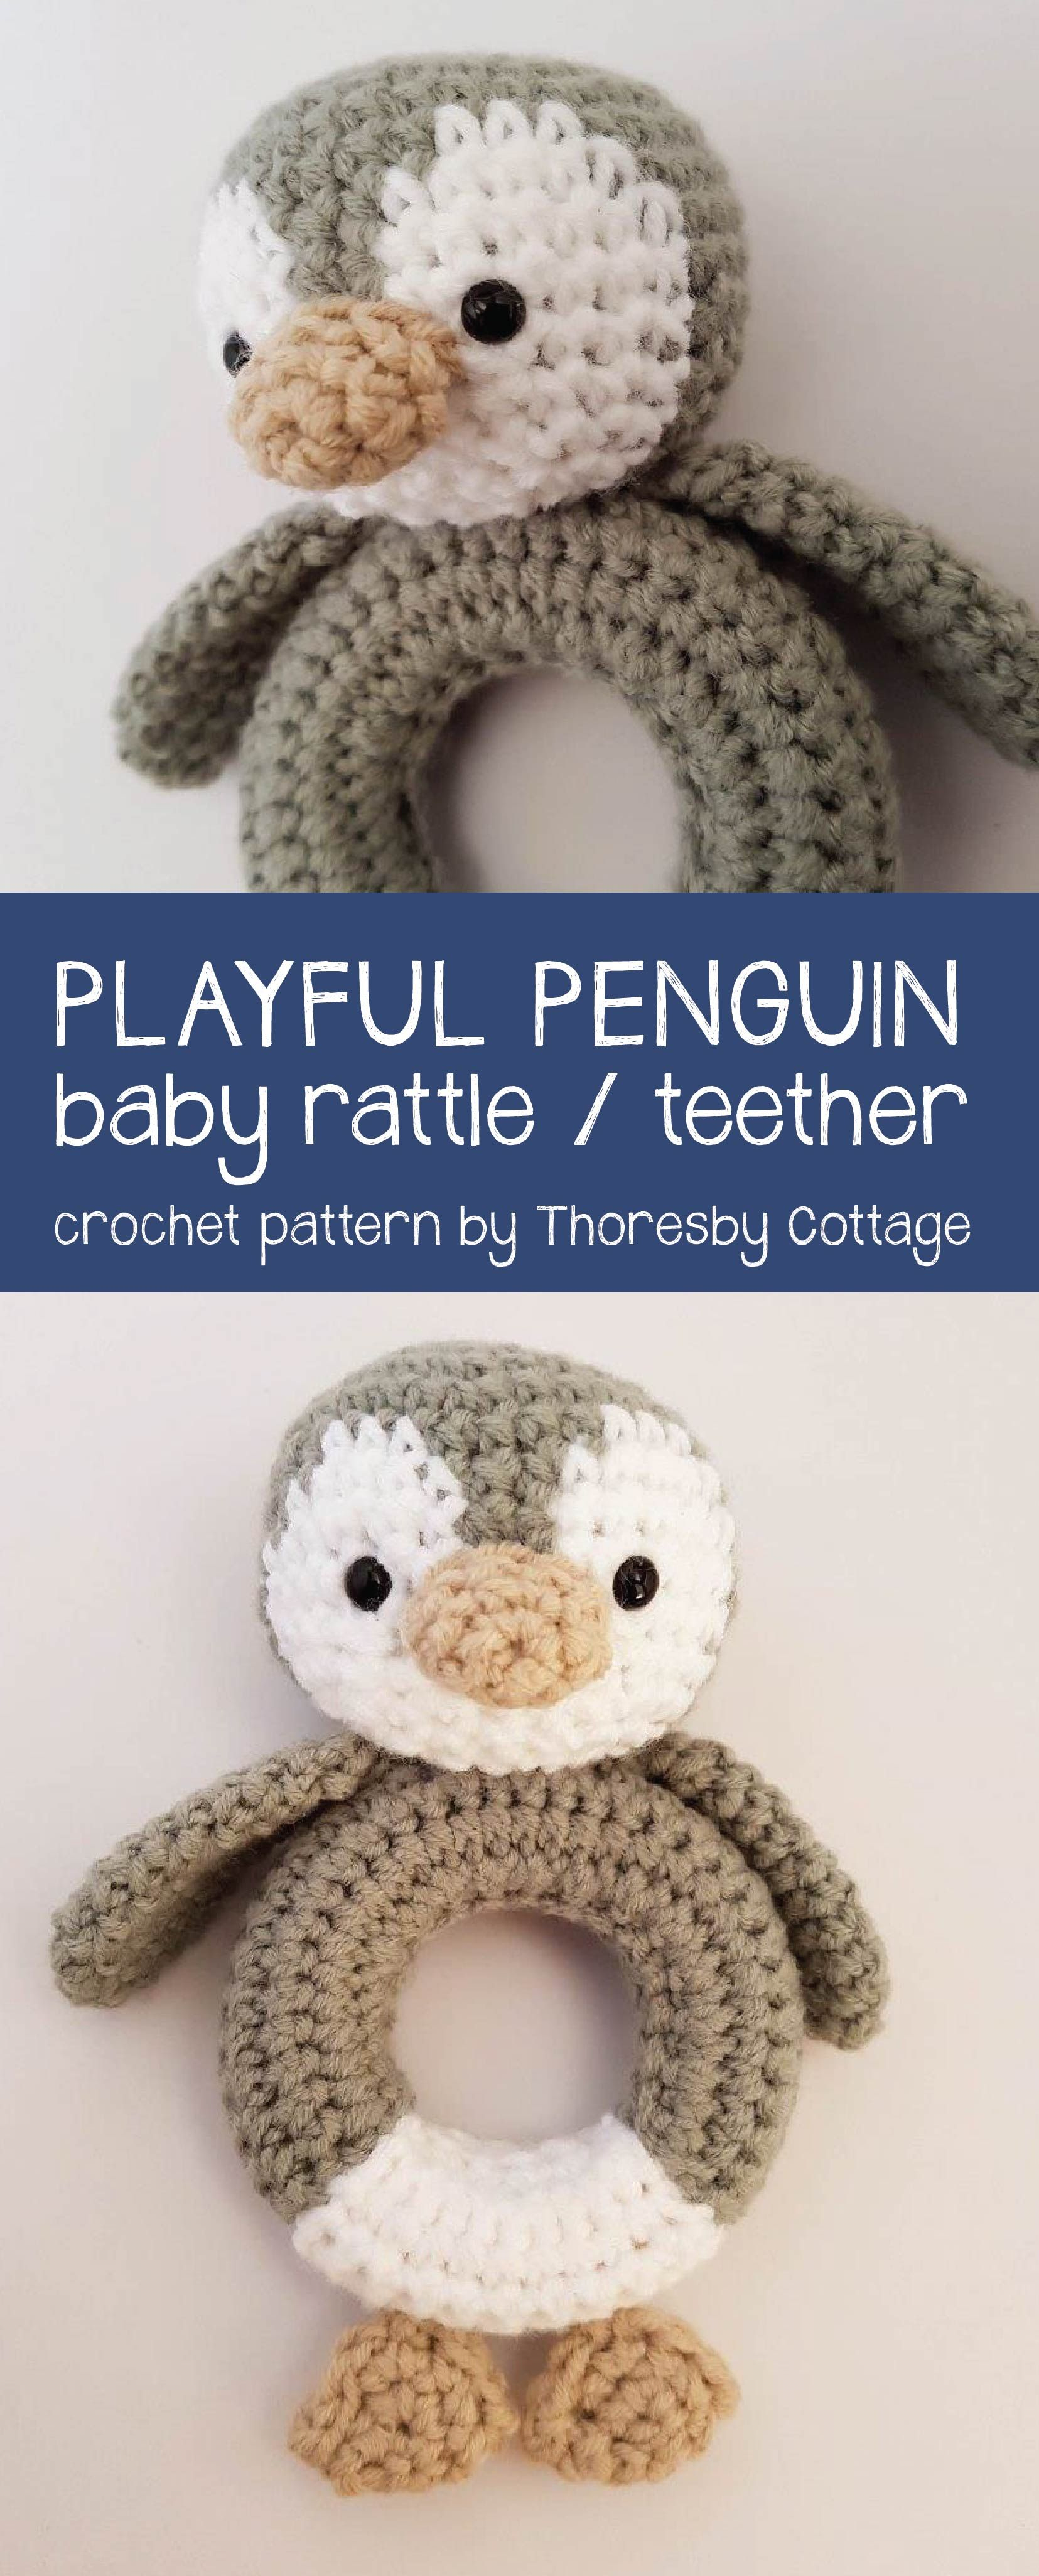 Crochet Penguin Pattern Playful Penguin Crochet Pattern Crochet Crochet Penguin Crochet